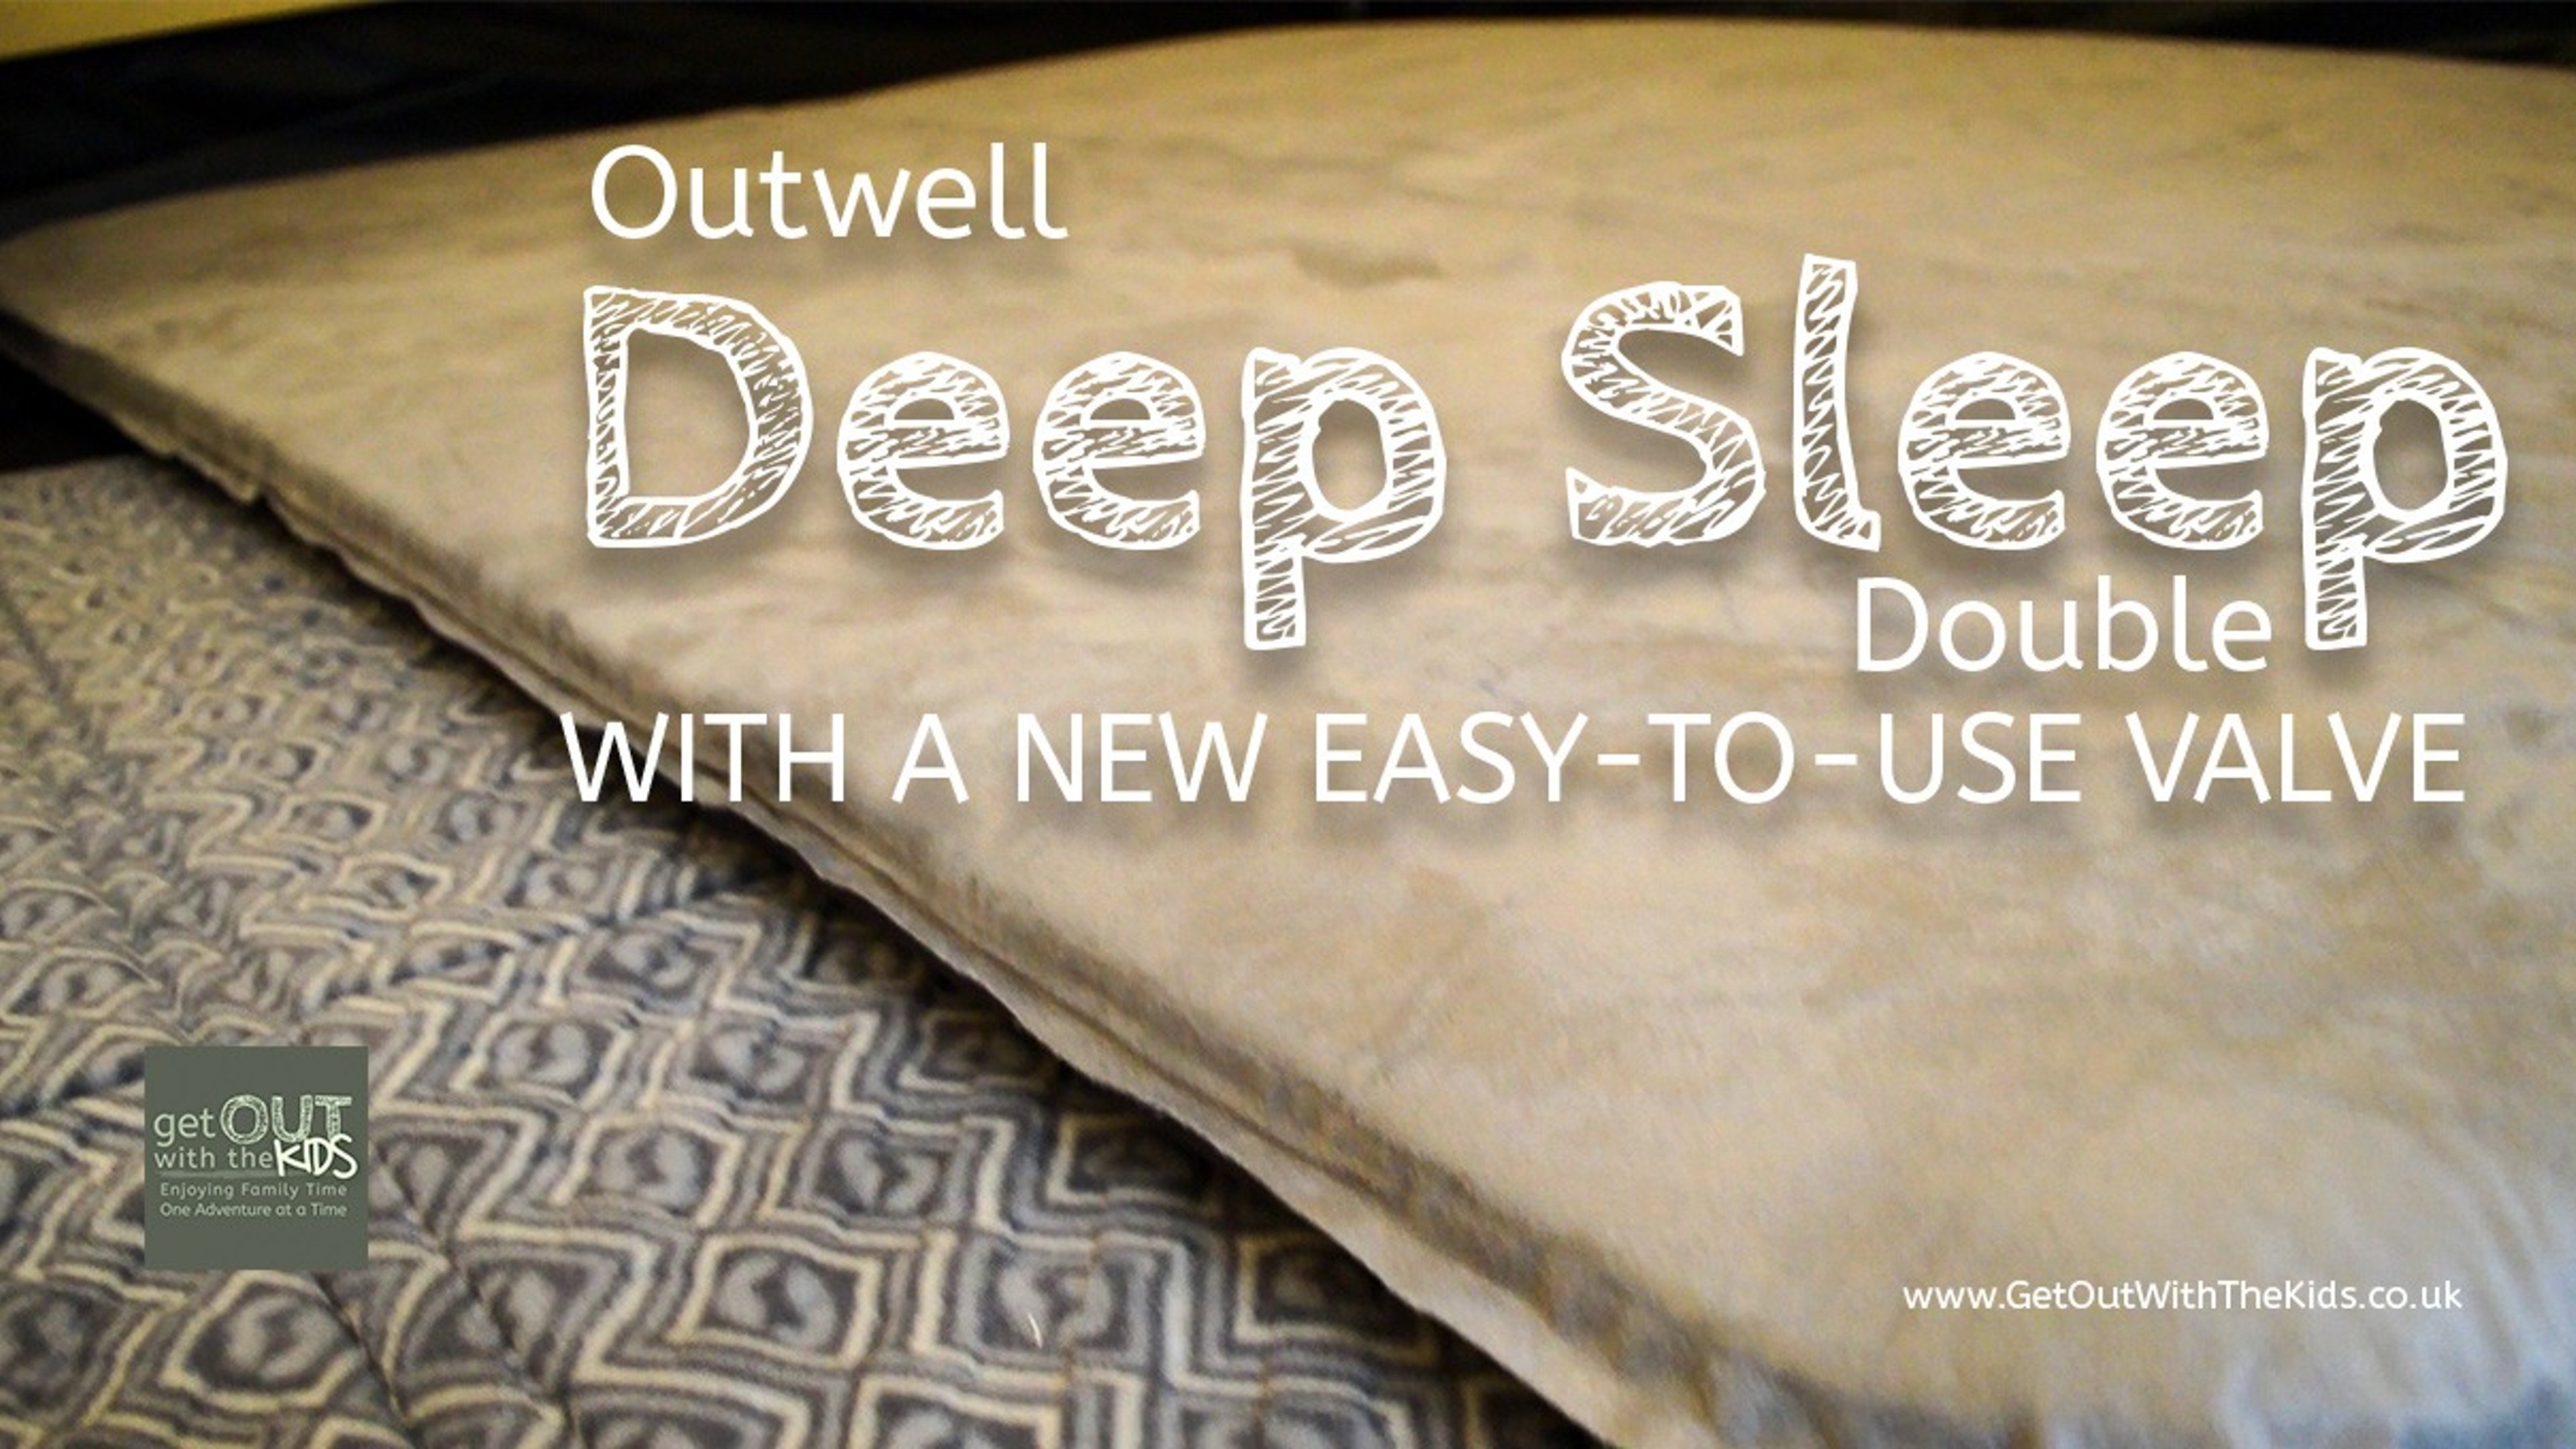 Outwell Deepsleep Double